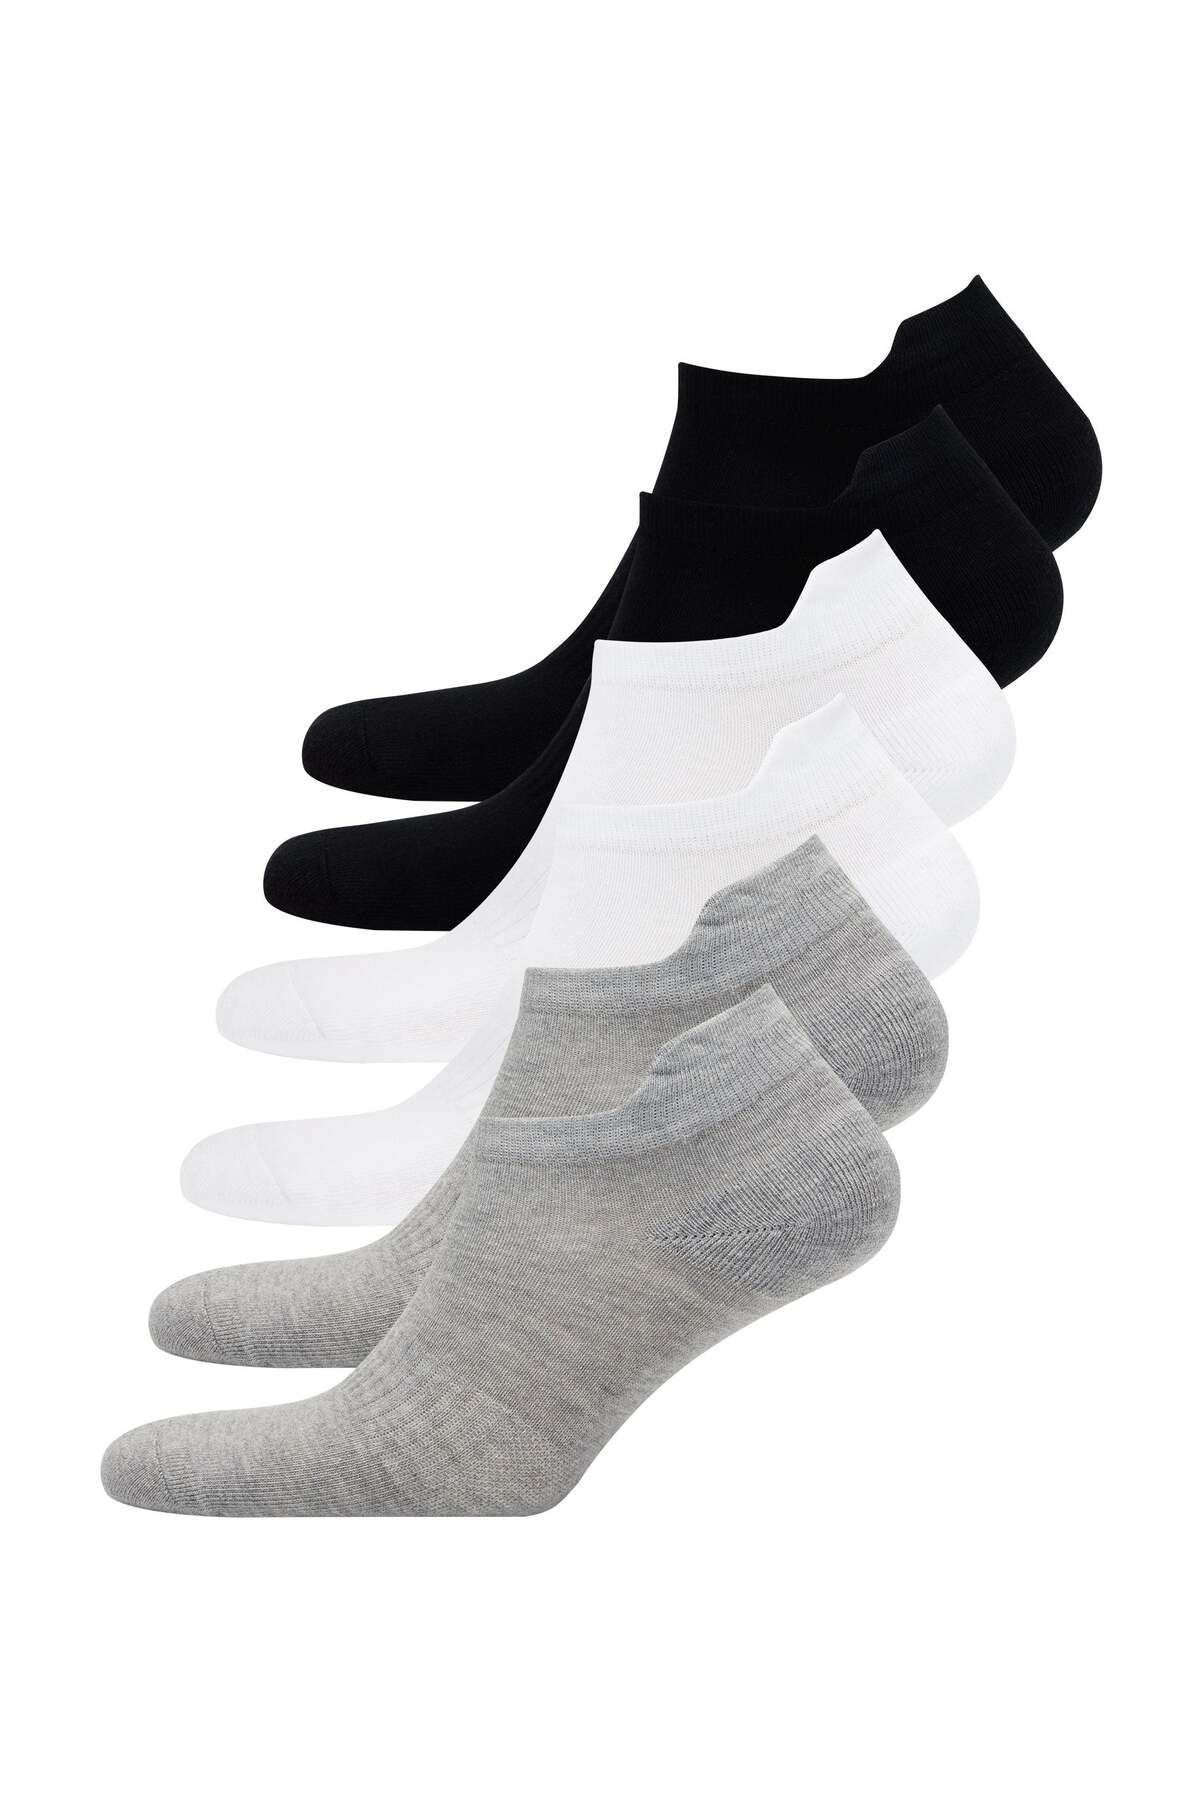 WESTMARK LONDON 6’lı Siyah Beyaz Gri Pamuk Karışımlı Erkek Çorap Seti RUNNING